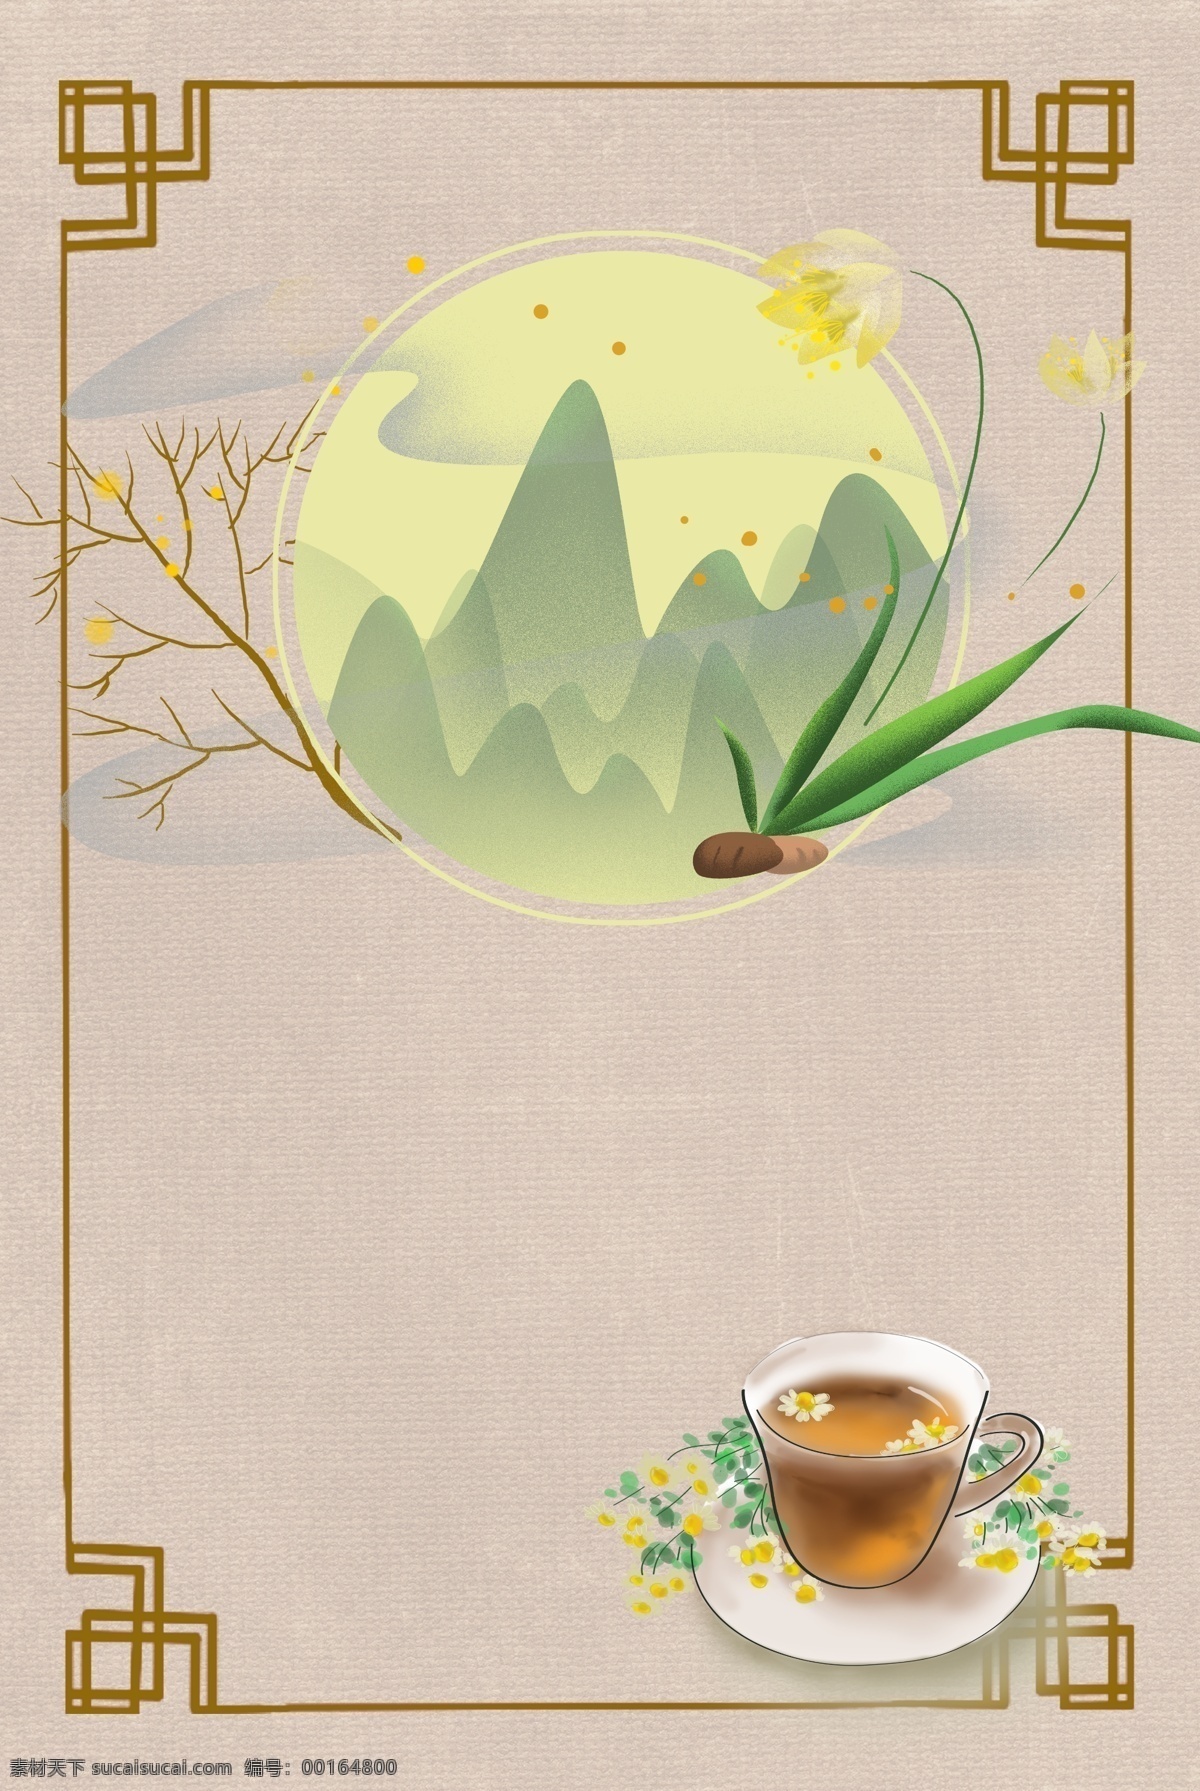 中国 风 茶壶 茶叶 背景 绿色 中国风 绿茶 植物 新茶 喝茶 传统